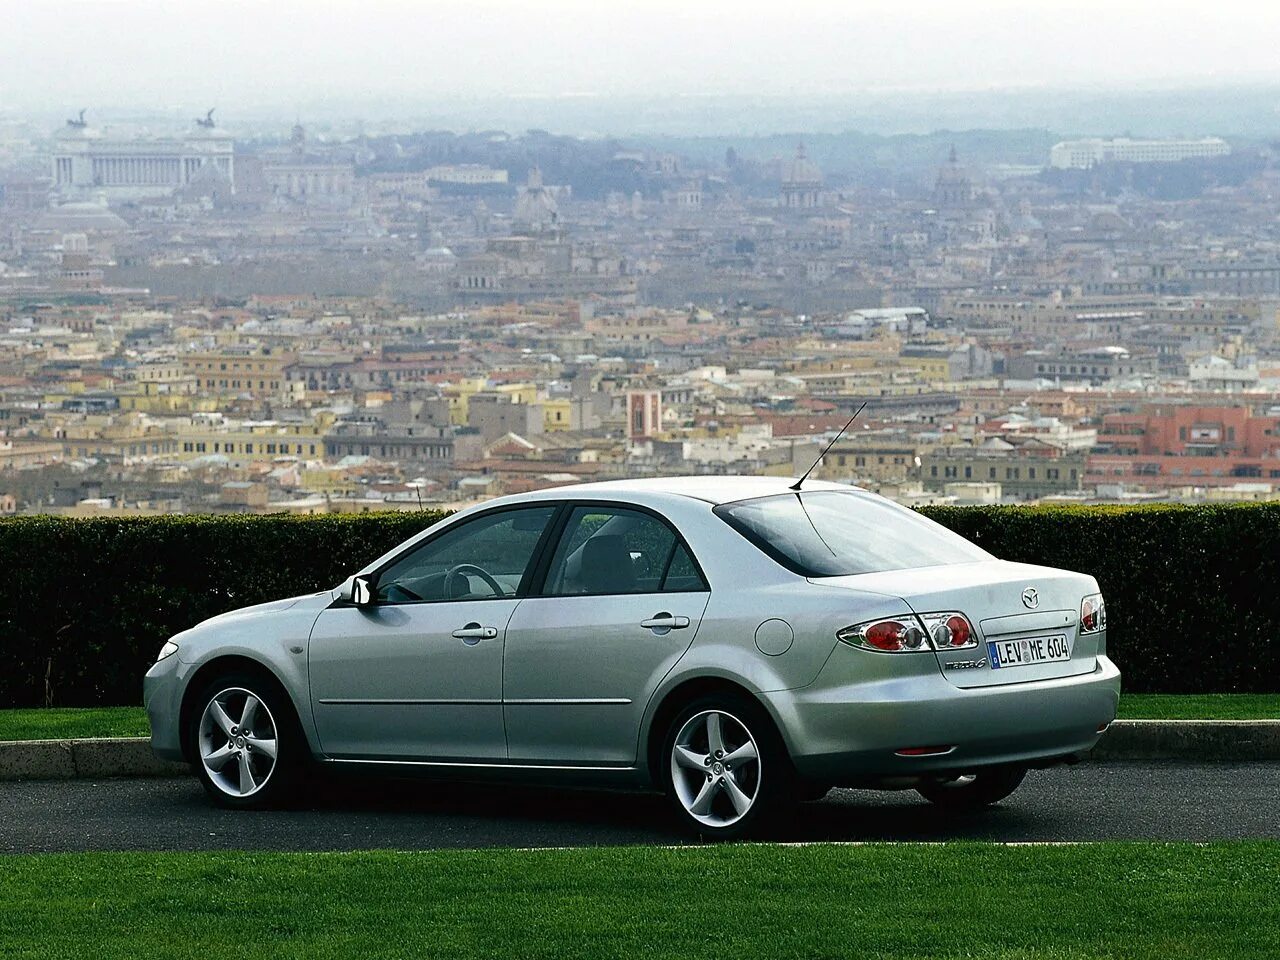 Мазда 6 1 gg. Мазда 6 седан 2002. Mazda 6 gg. Мазда 6 gg 2002. Mazda 6 gg 2002 седан.